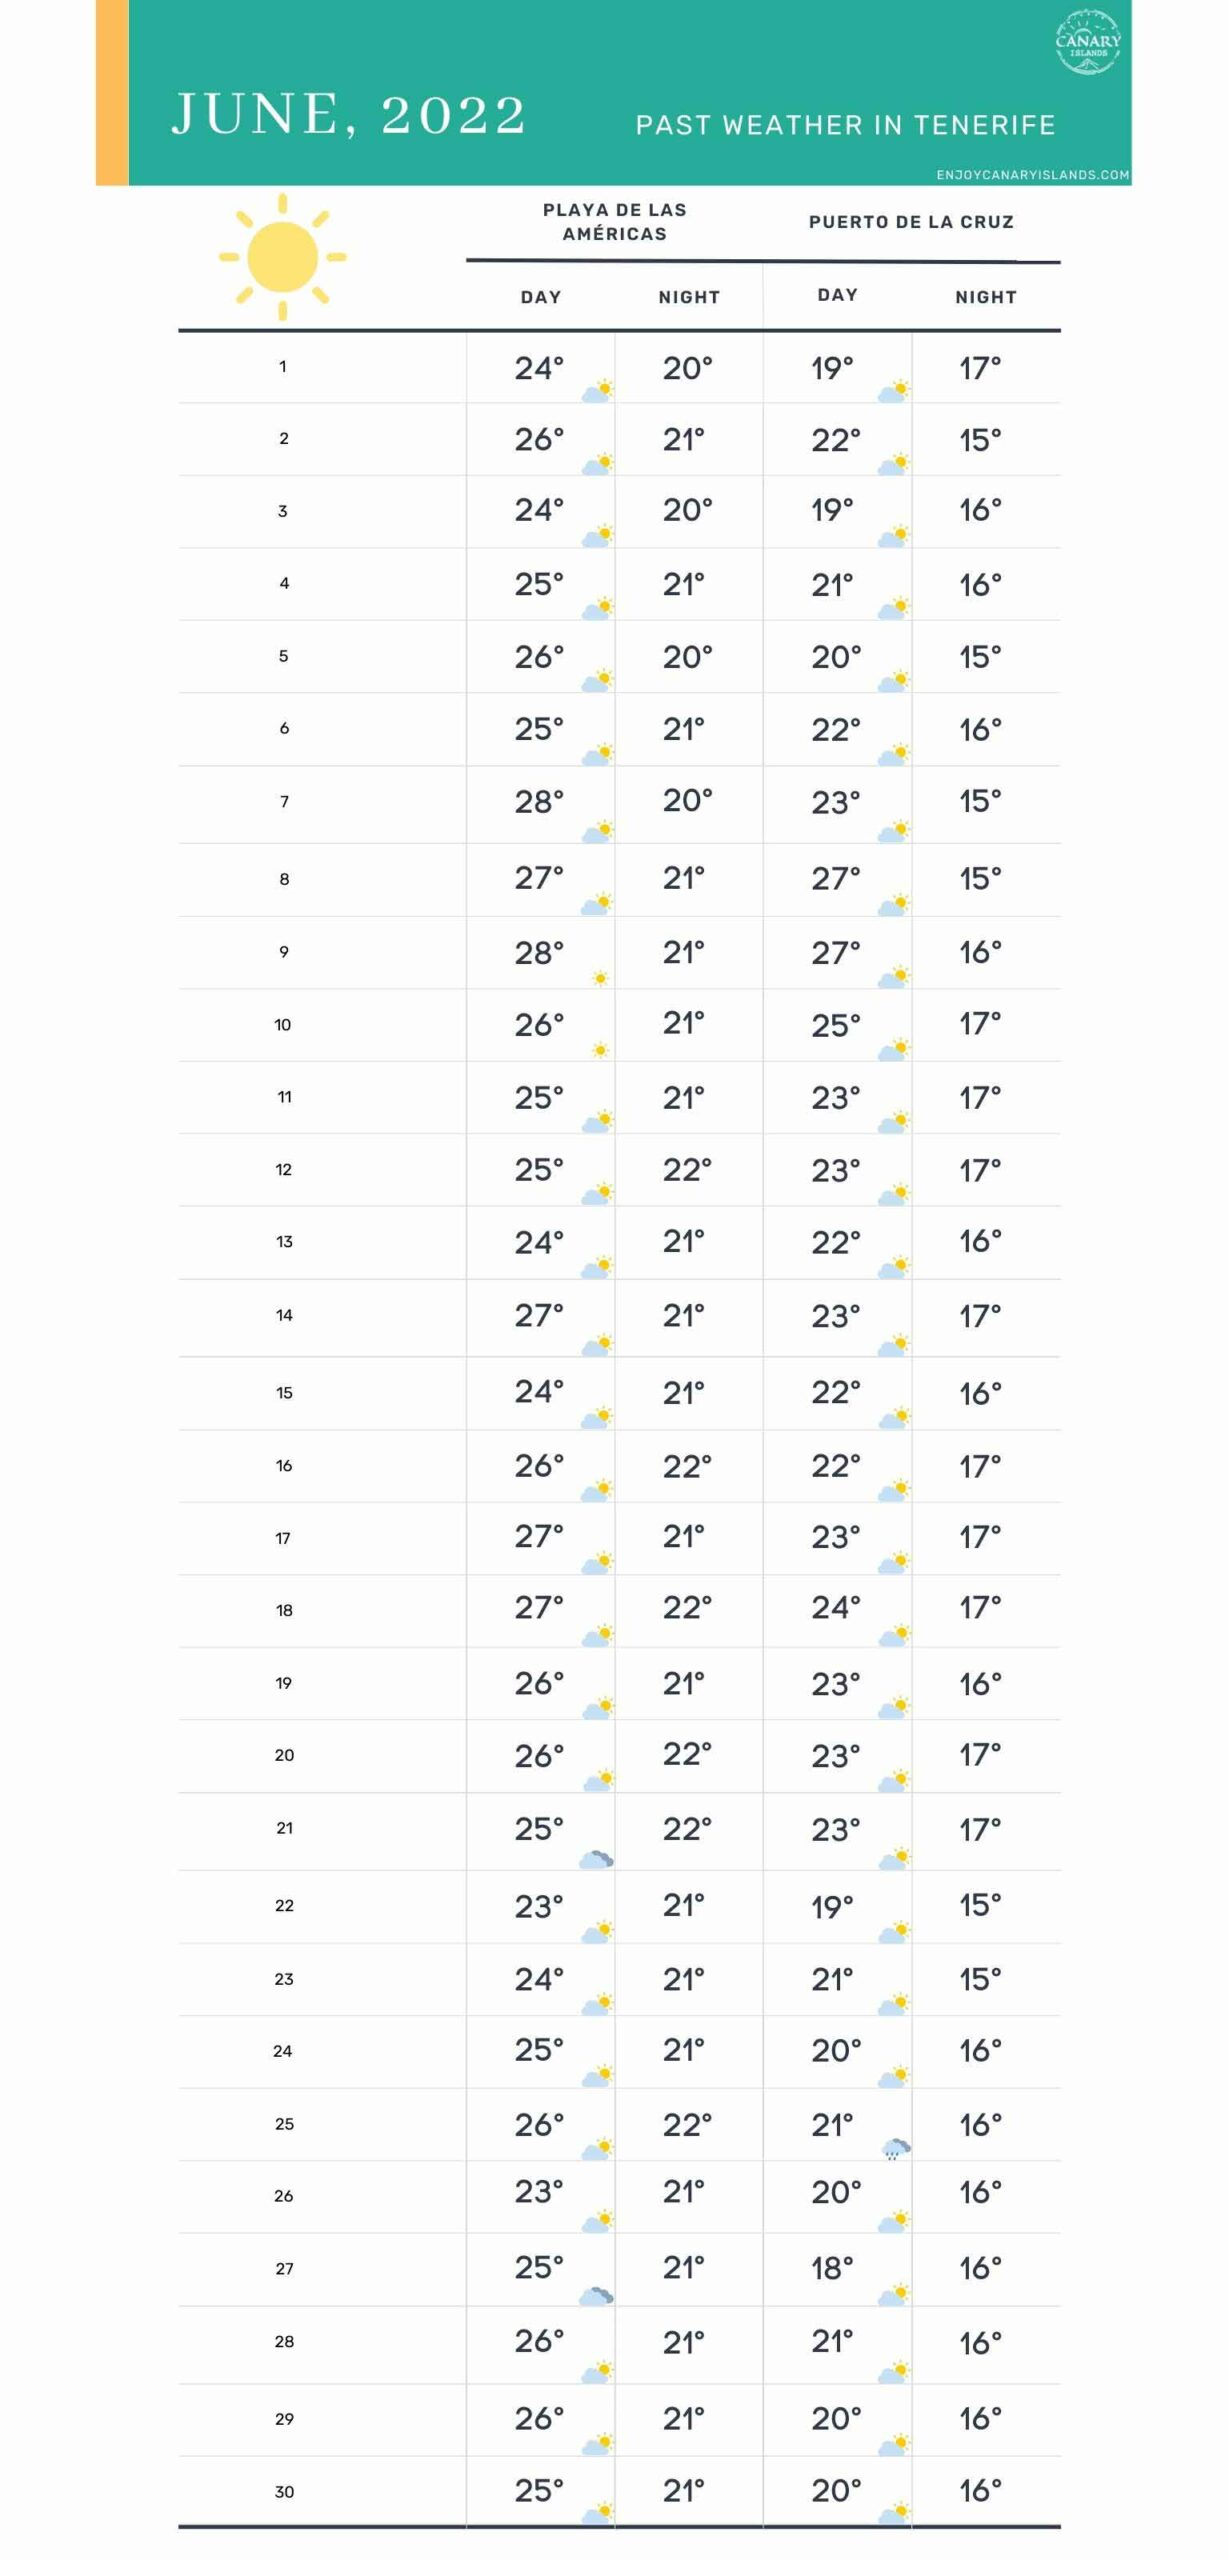 June past weather in Tenerife 2022